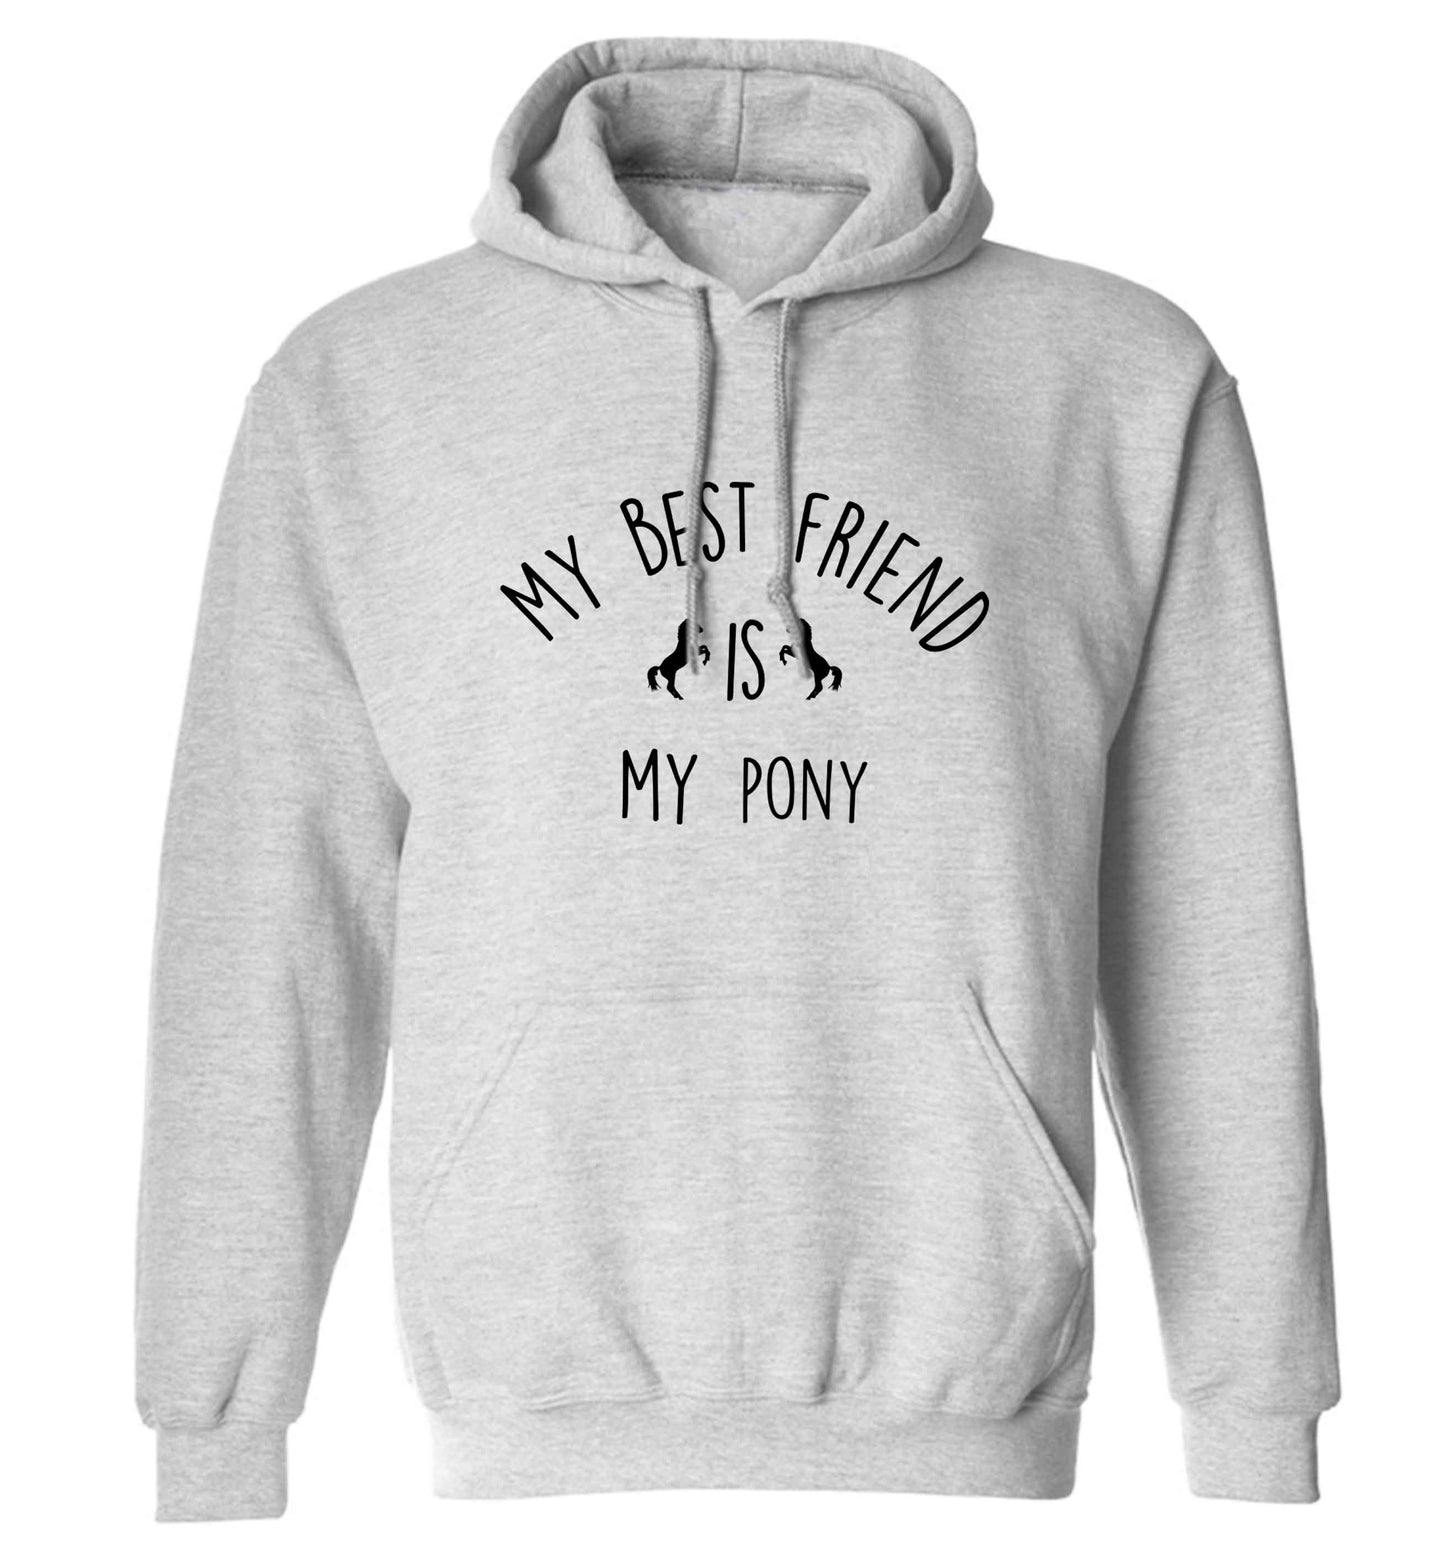 My best friend is my pony adults unisex grey hoodie 2XL